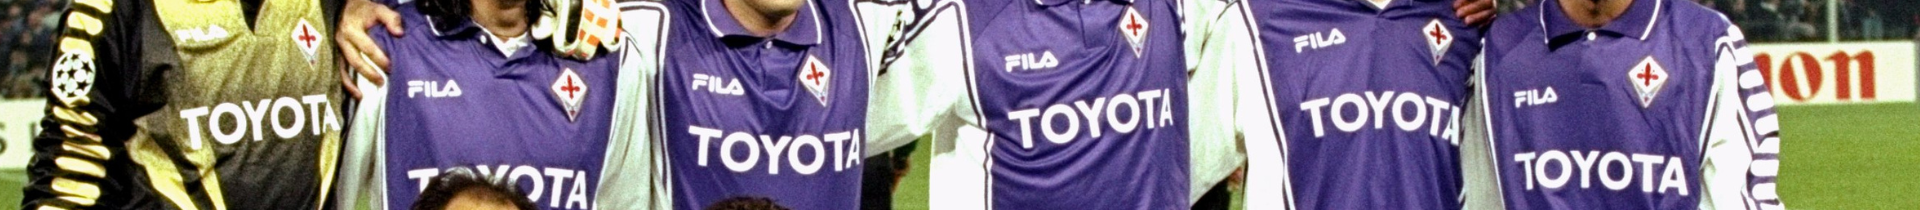 Signed Fiorentina Football Memorabilia